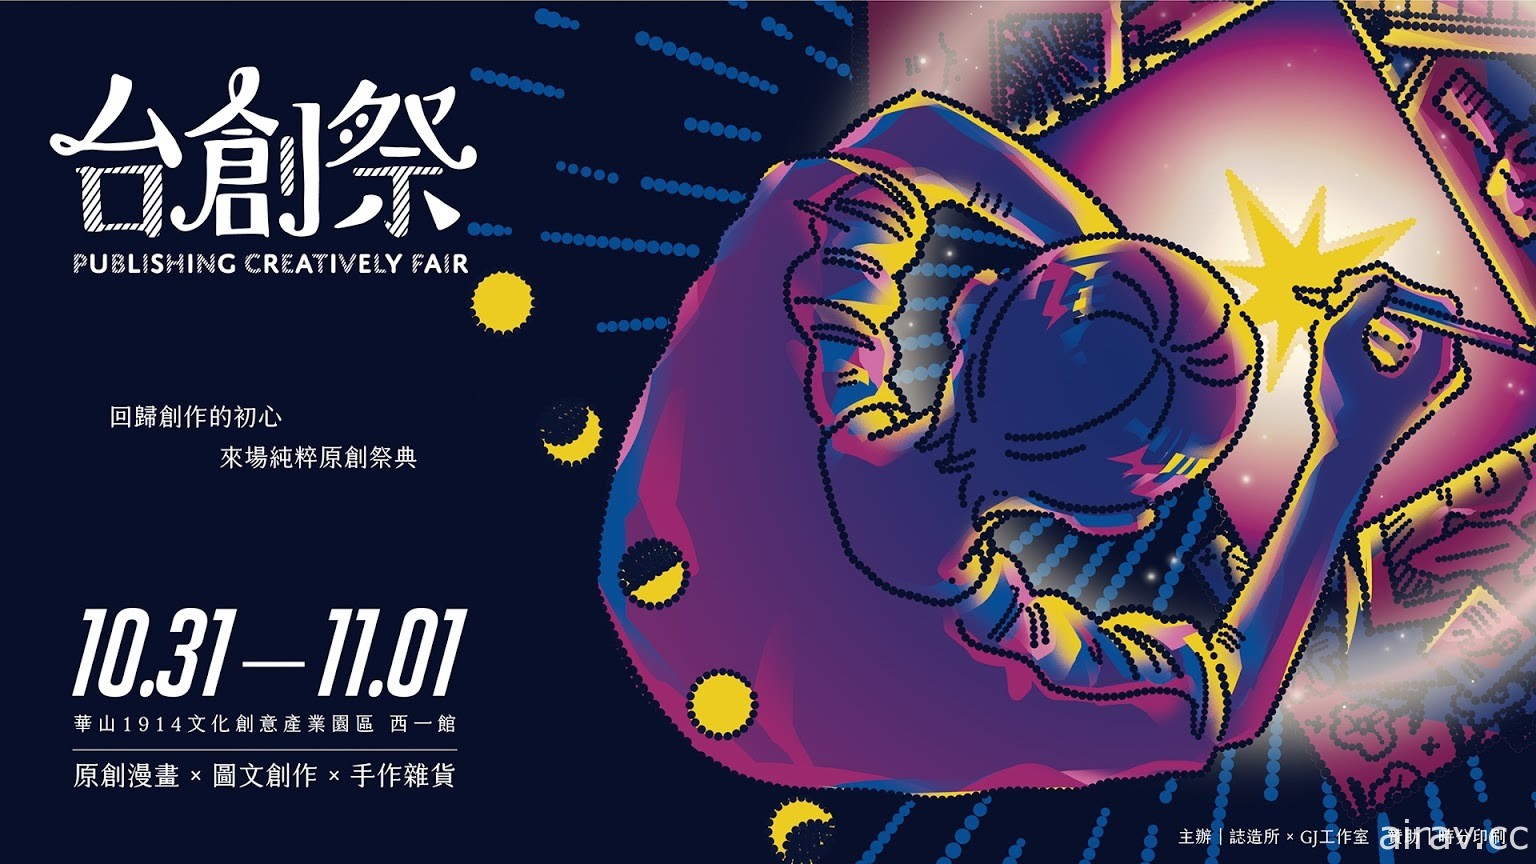 「台創祭」漫畫、插畫、手作的原創祭典 10 月 31 日起連續兩天在華山熱鬧展出